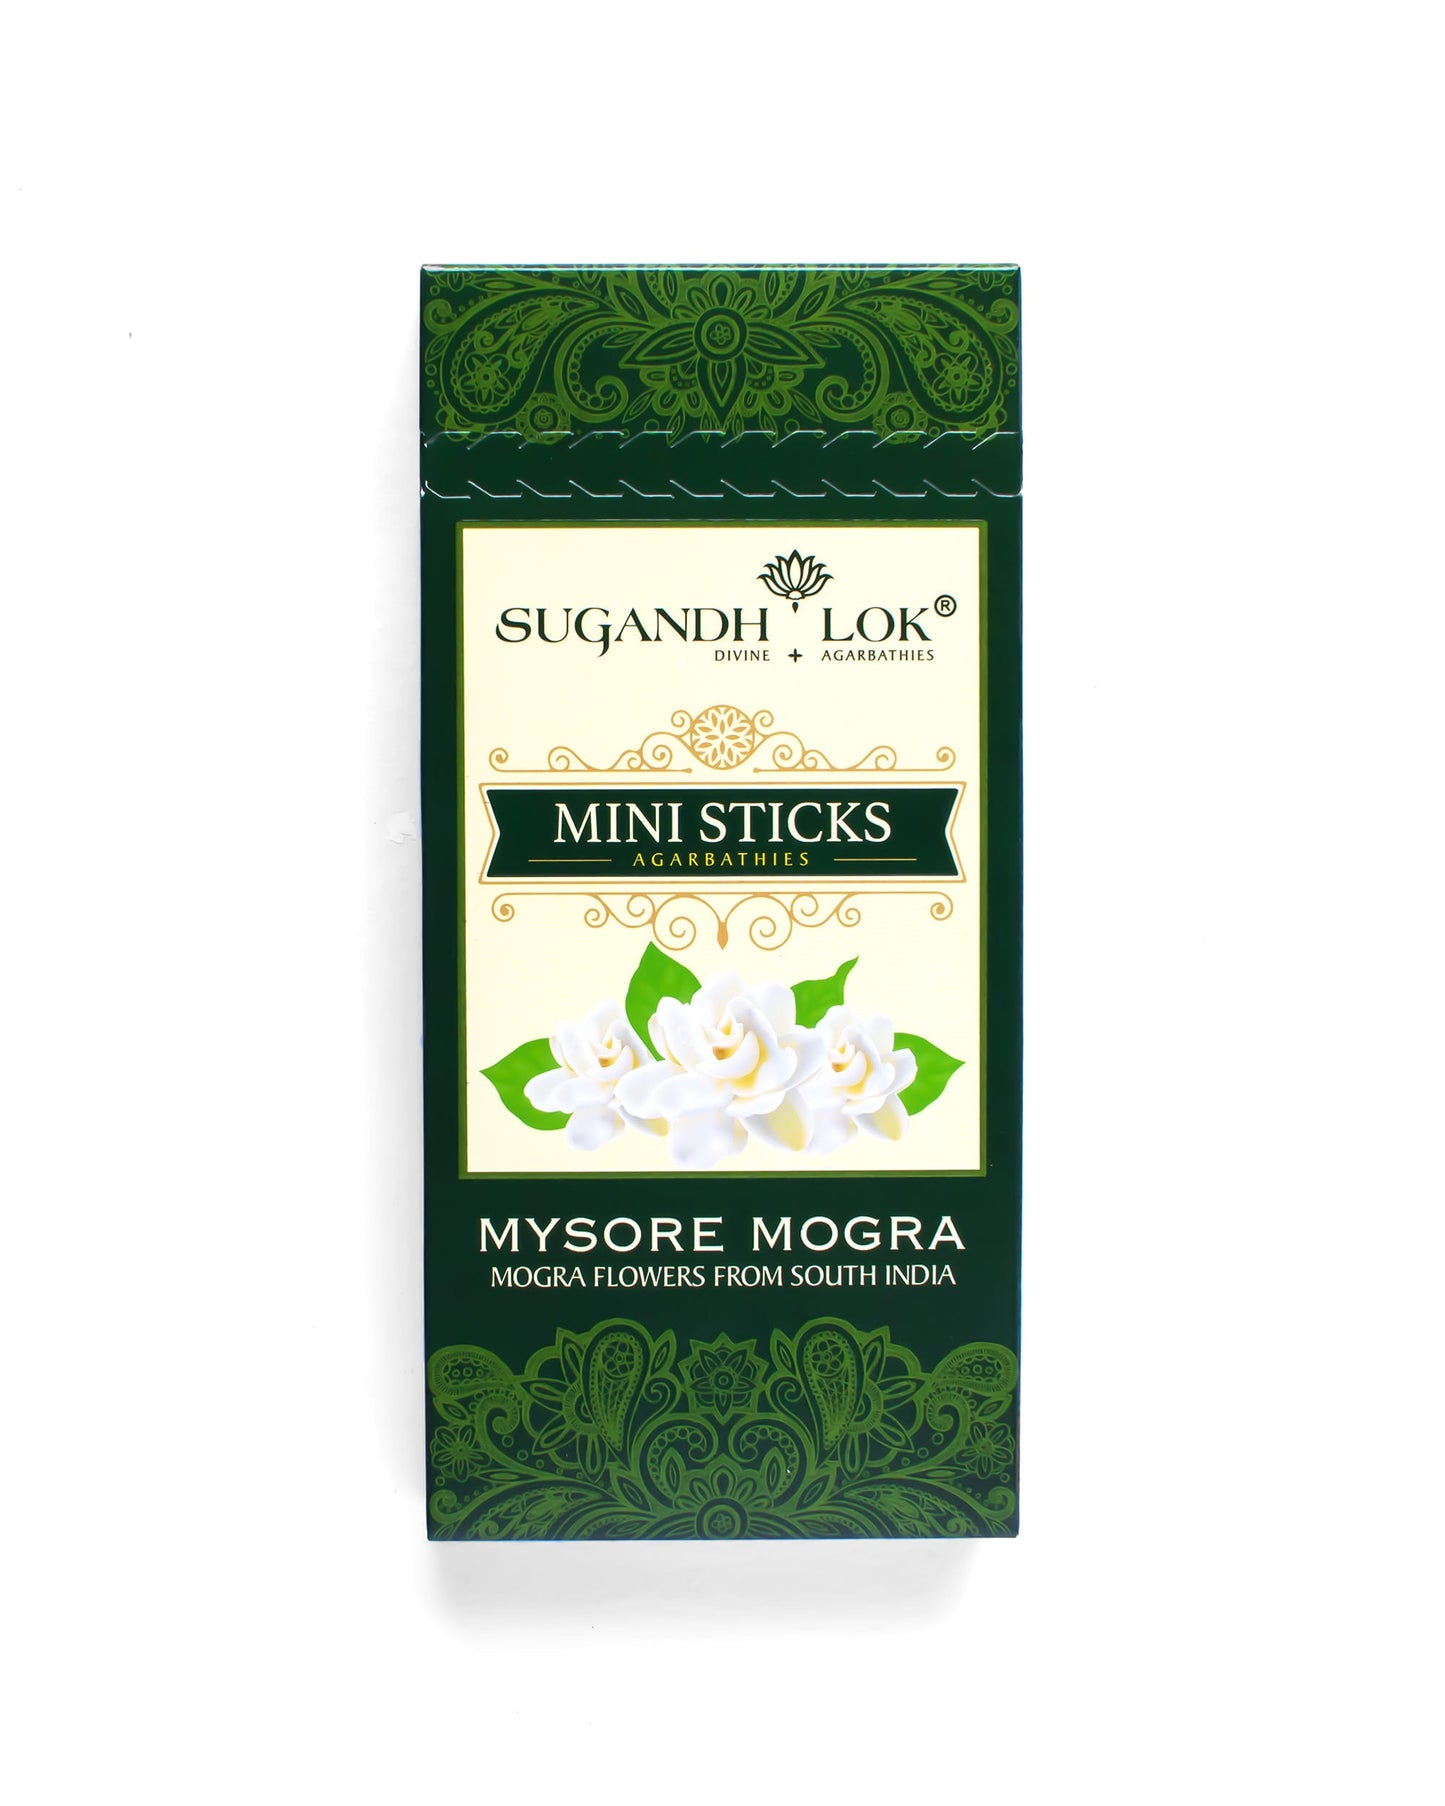 Mysore Mogra Agarbatti Mini Sticks Box by SugandhLok